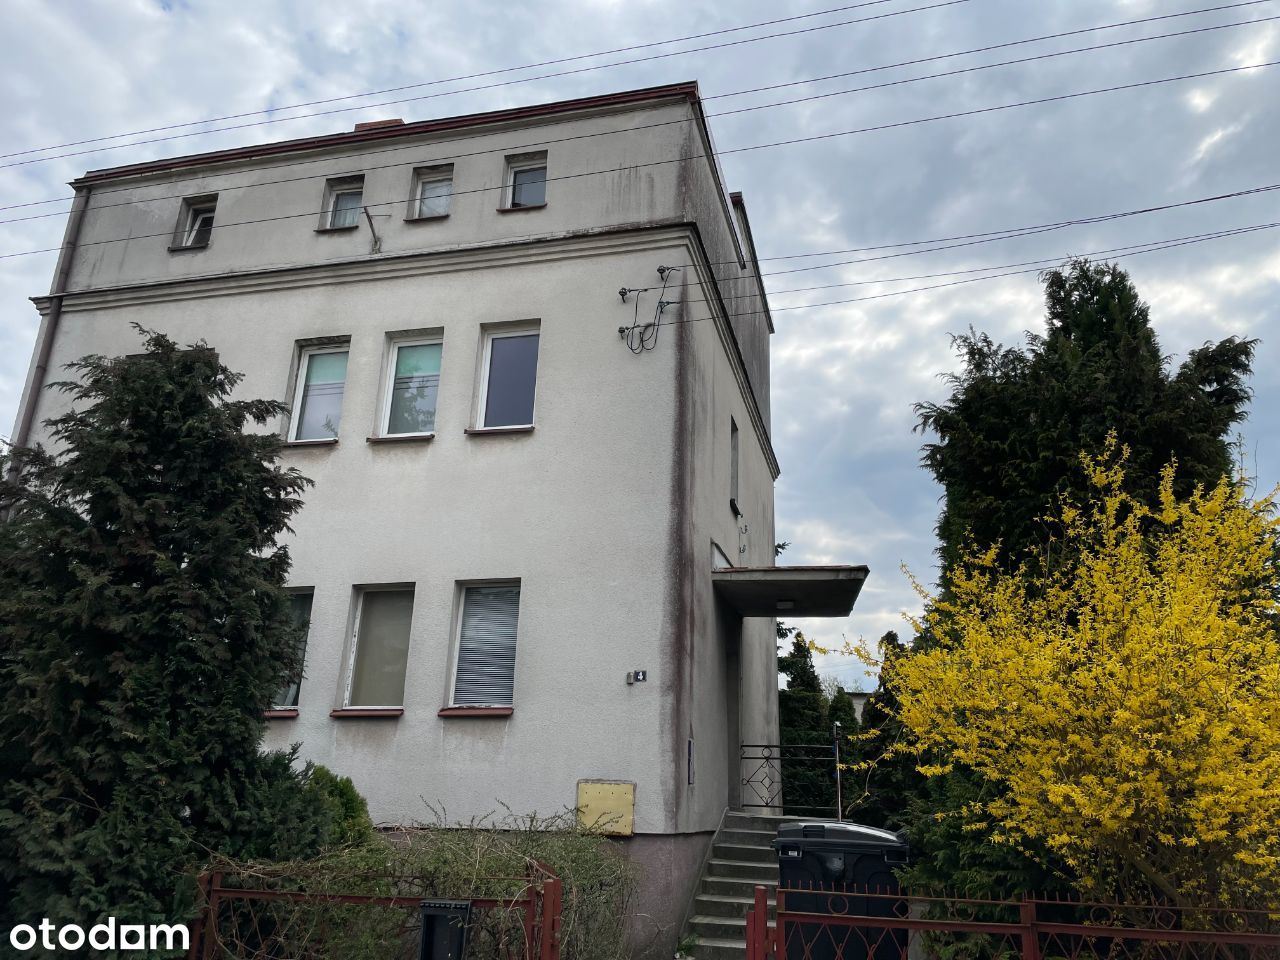 Dom na sprzedaż w centrum Chojnic, do remontu